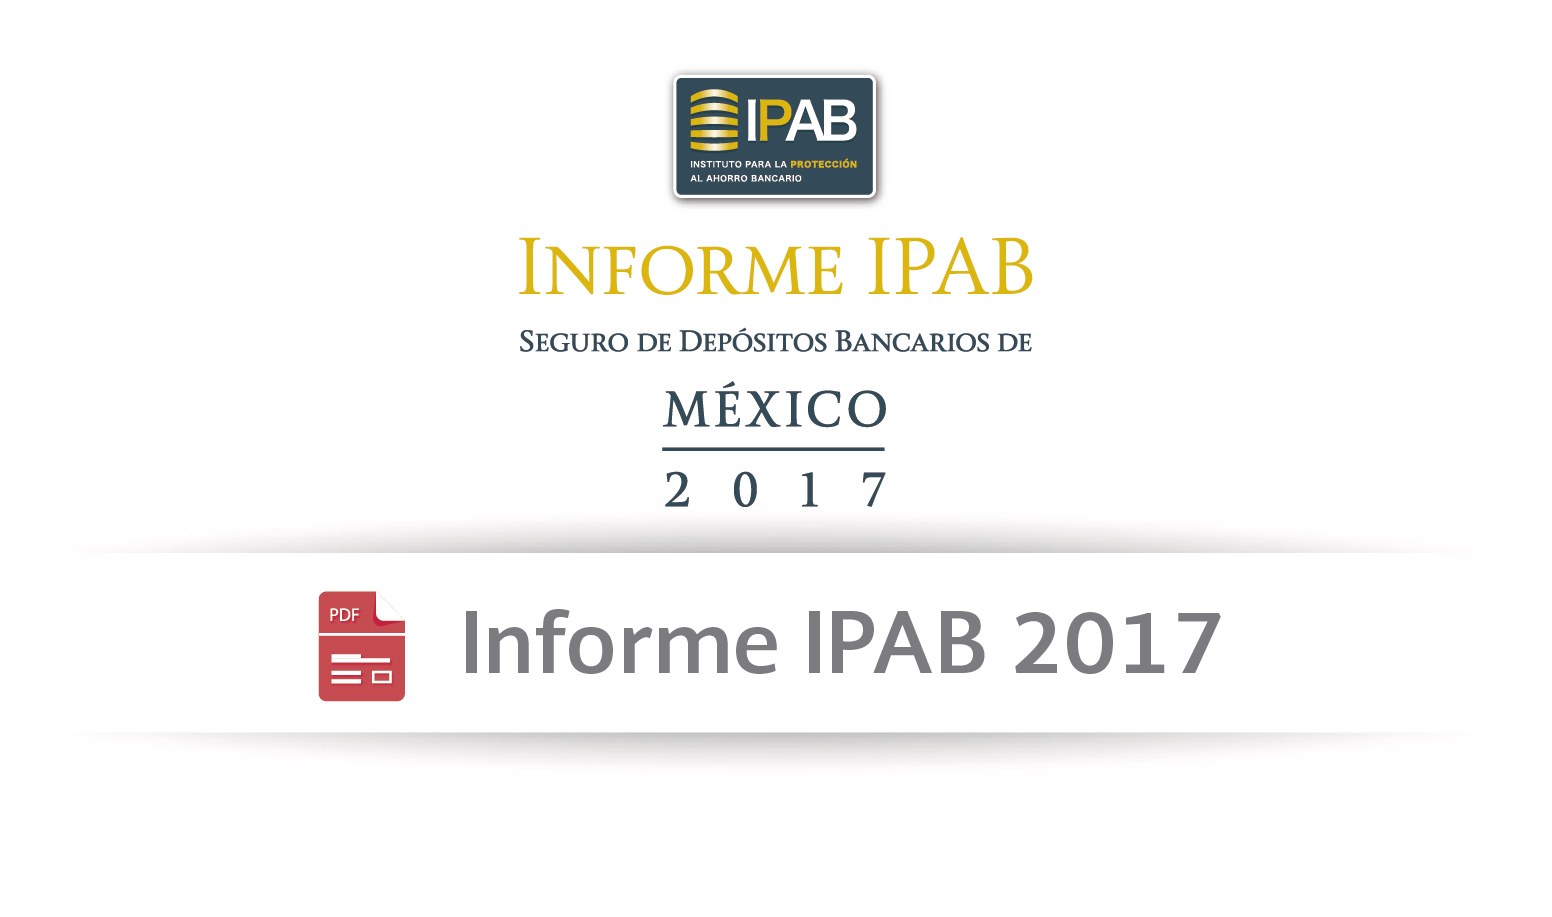 Informe IPAB 2017 Seguro de Depósitos Bancarios de México